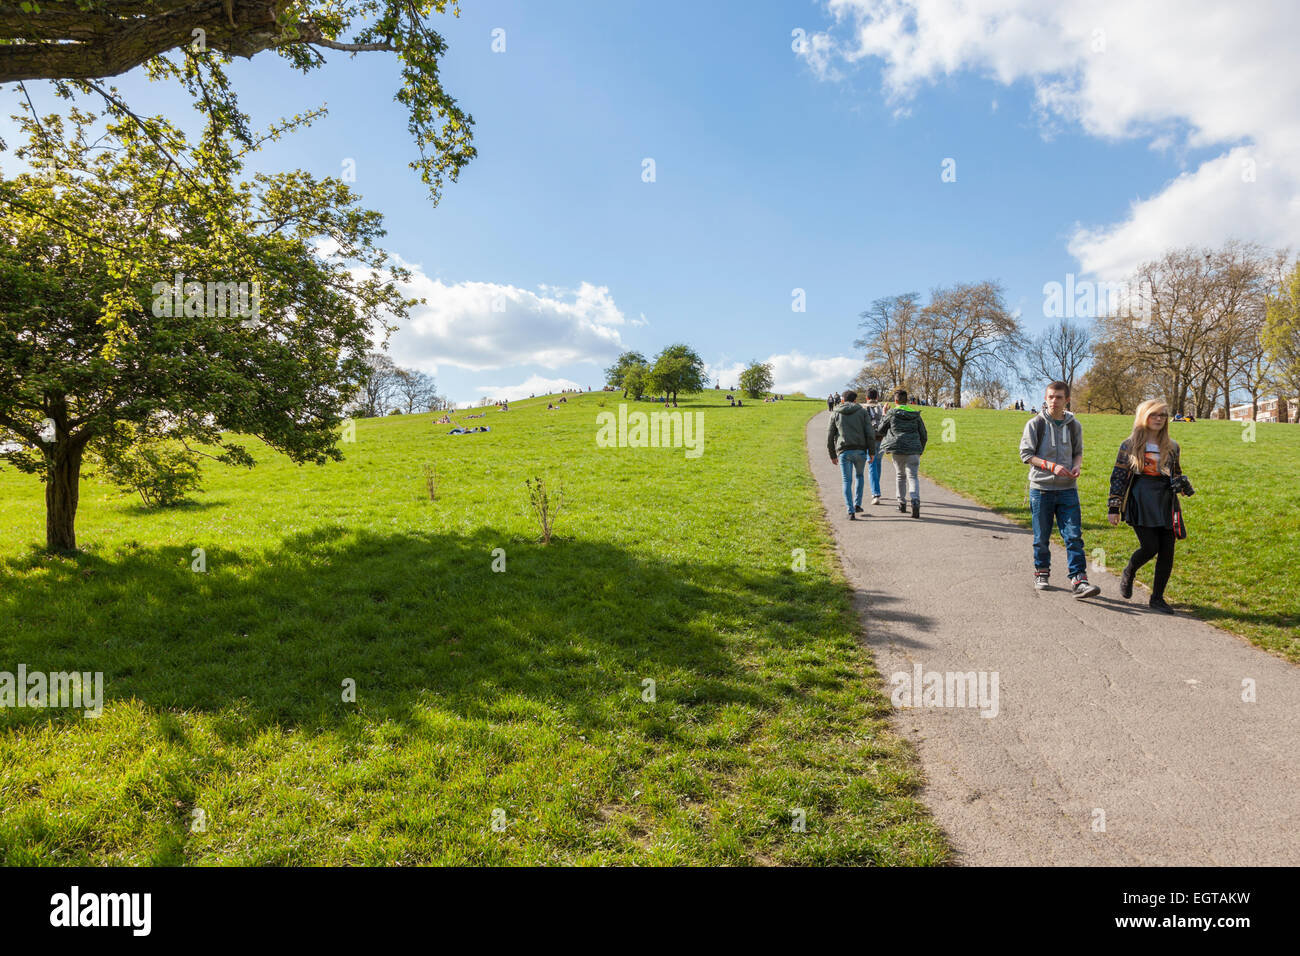 Les gens à monter et descendre une colline dans un parc sur une journée ensoleillée au printemps. Primrose Hill, London, England, UK Banque D'Images